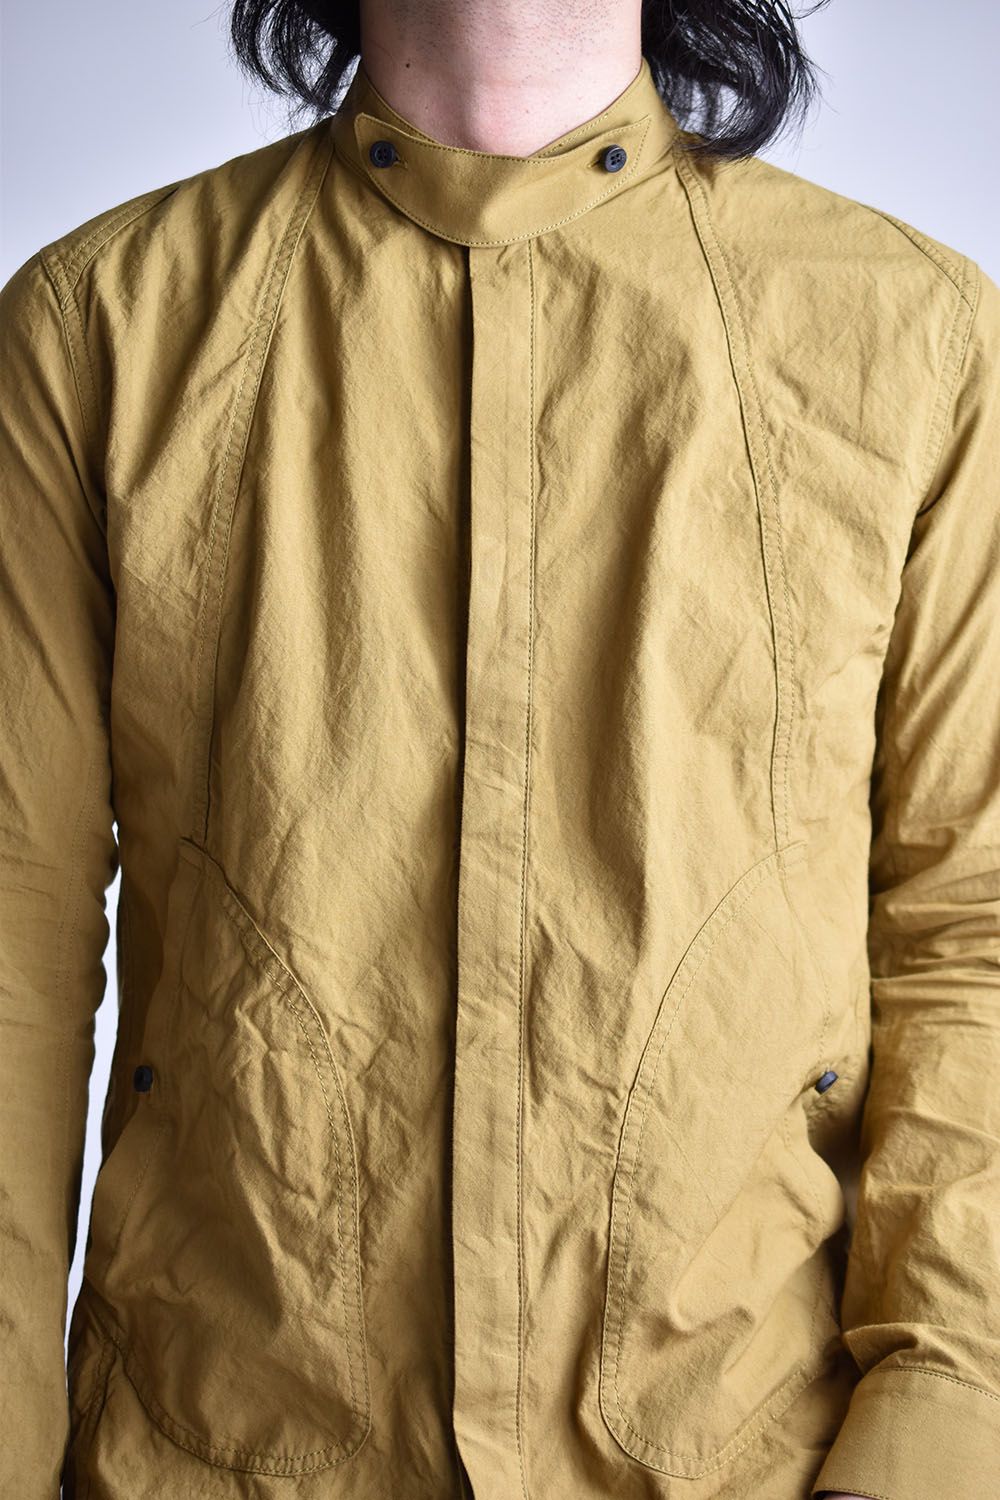 80/2 Cotton broad Band collar shirt"Leaf Yellow"/ コットンバンドカラーシャツ"リーフイエロー"